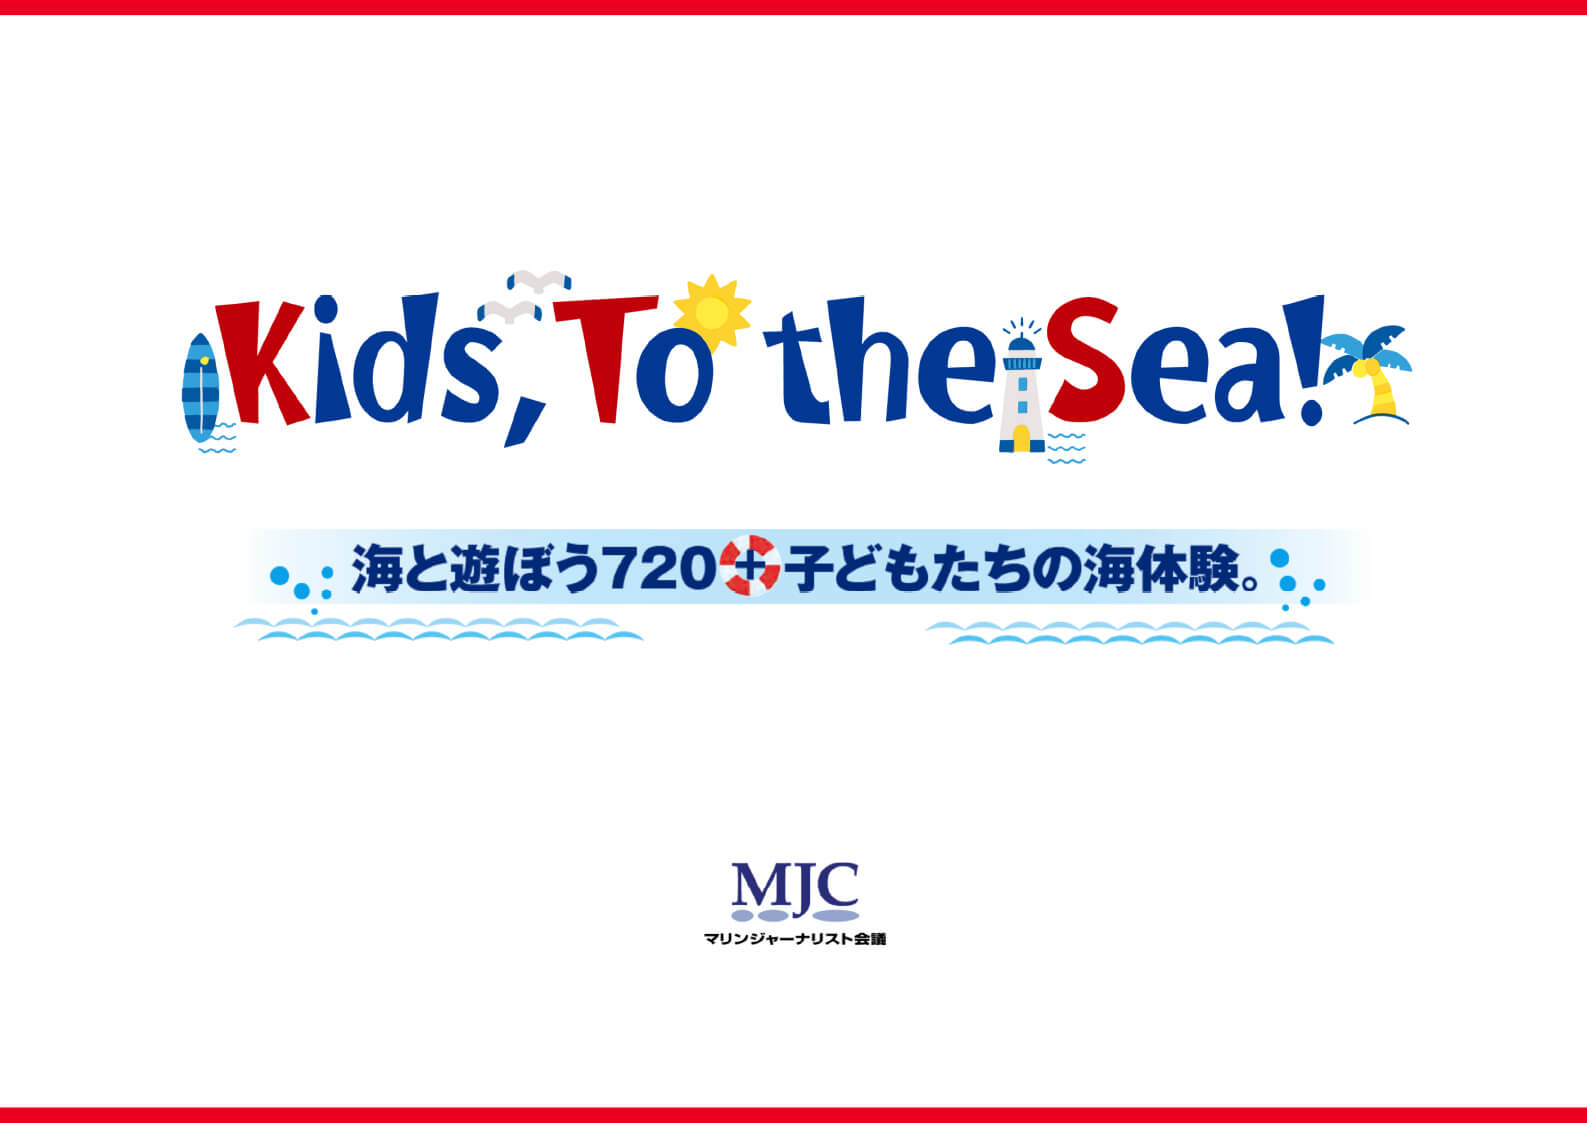 「海の日」に、子供たちと 海で 楽しむ 海遊びキャンペーン「Kids.to.the.Sea!」開催のお知らせ!